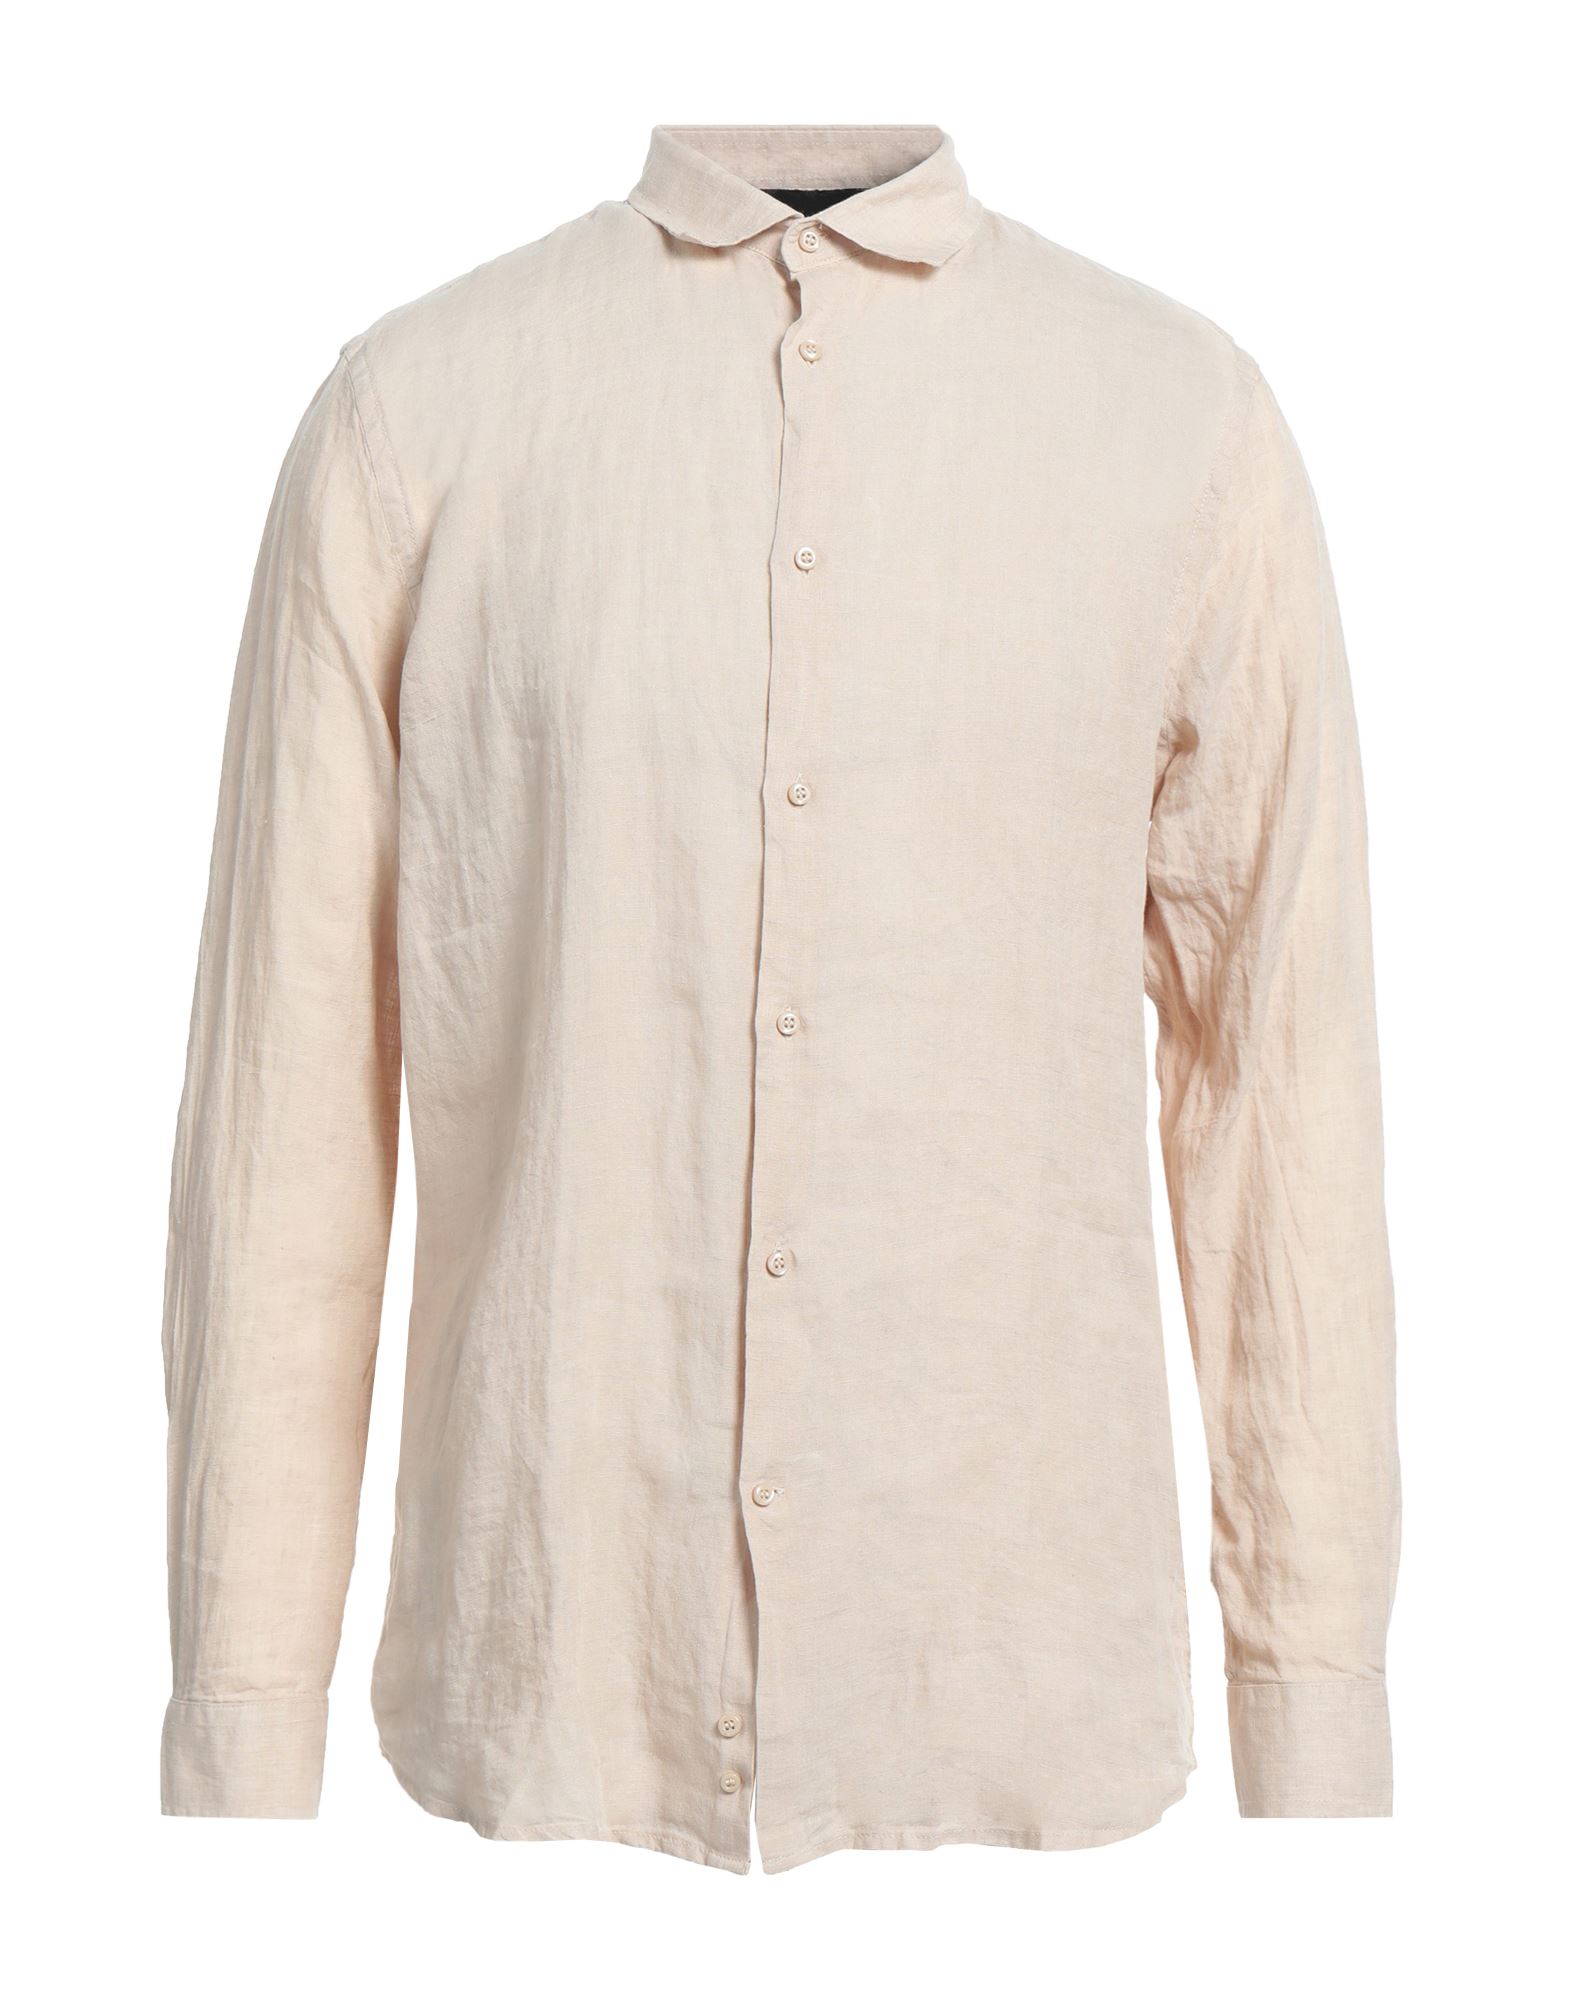 Shop John Richmond Man Shirt Beige Size Xxl Linen